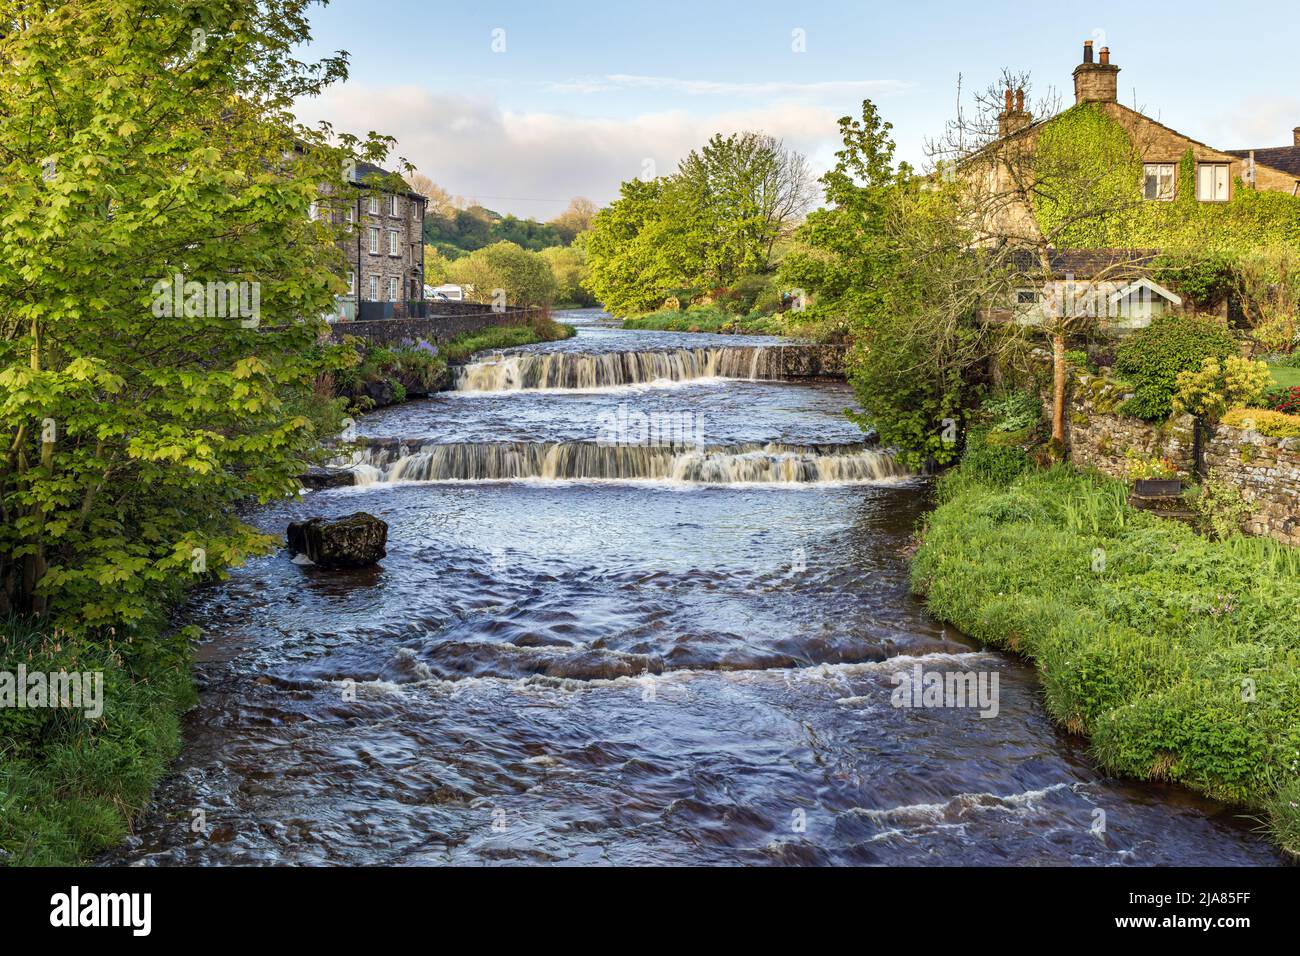 Die Wasserfälle auf Gayle Beck im malerischen Weiler Gayle in der Nähe der Stadt Hawes, Wenslydale, Yorkshire Dales National Park, England, Großbritannien Stockfoto